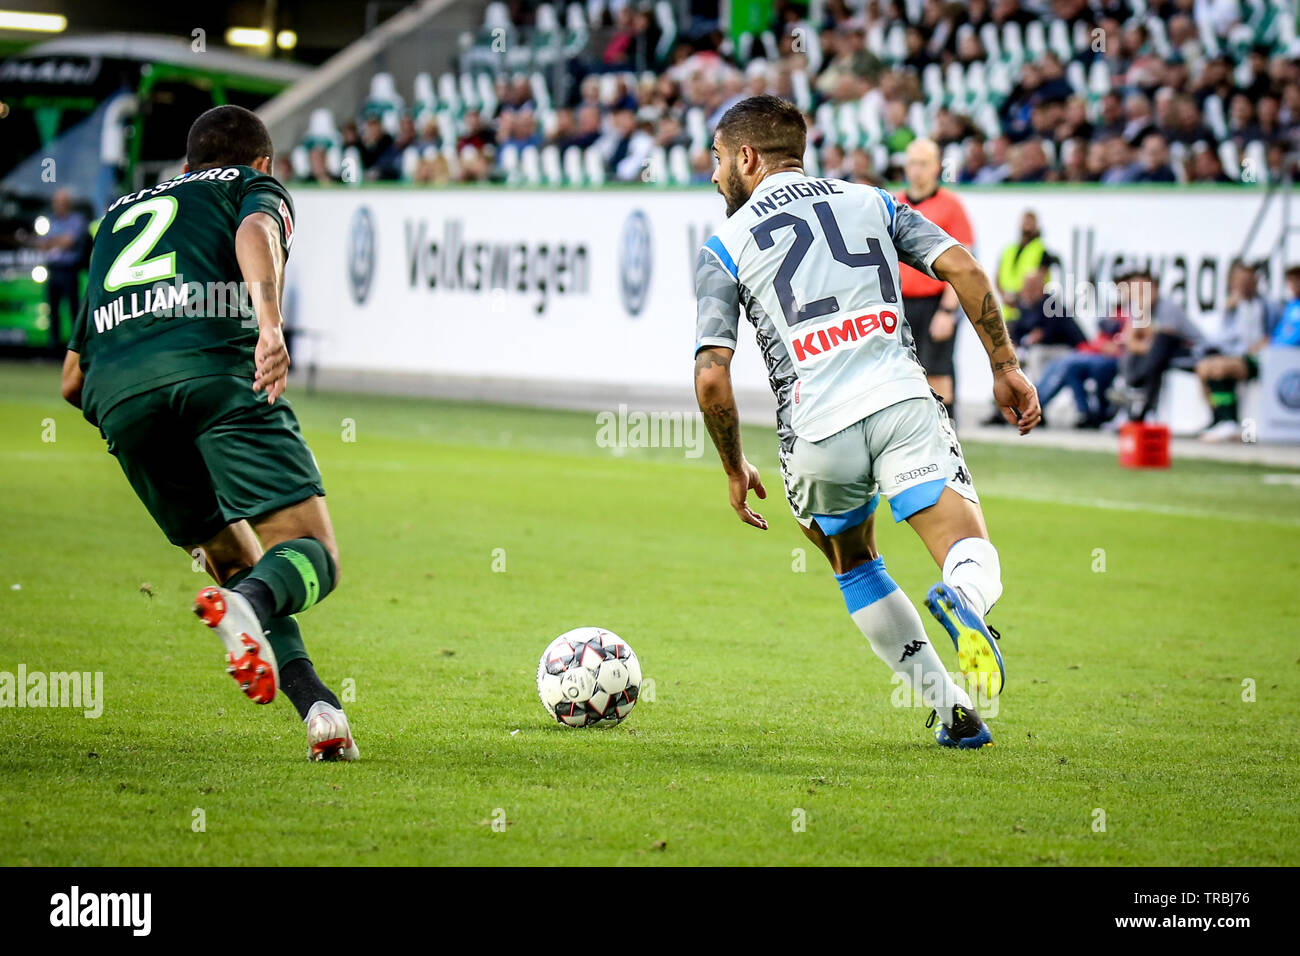 Wolfsburg, Germania, 11 agosto 2018: Lorenzo Insigne in azione durante il match Vfl Wolfsburg - SSC Napoli. Foto di Michele Morrone. Foto Stock